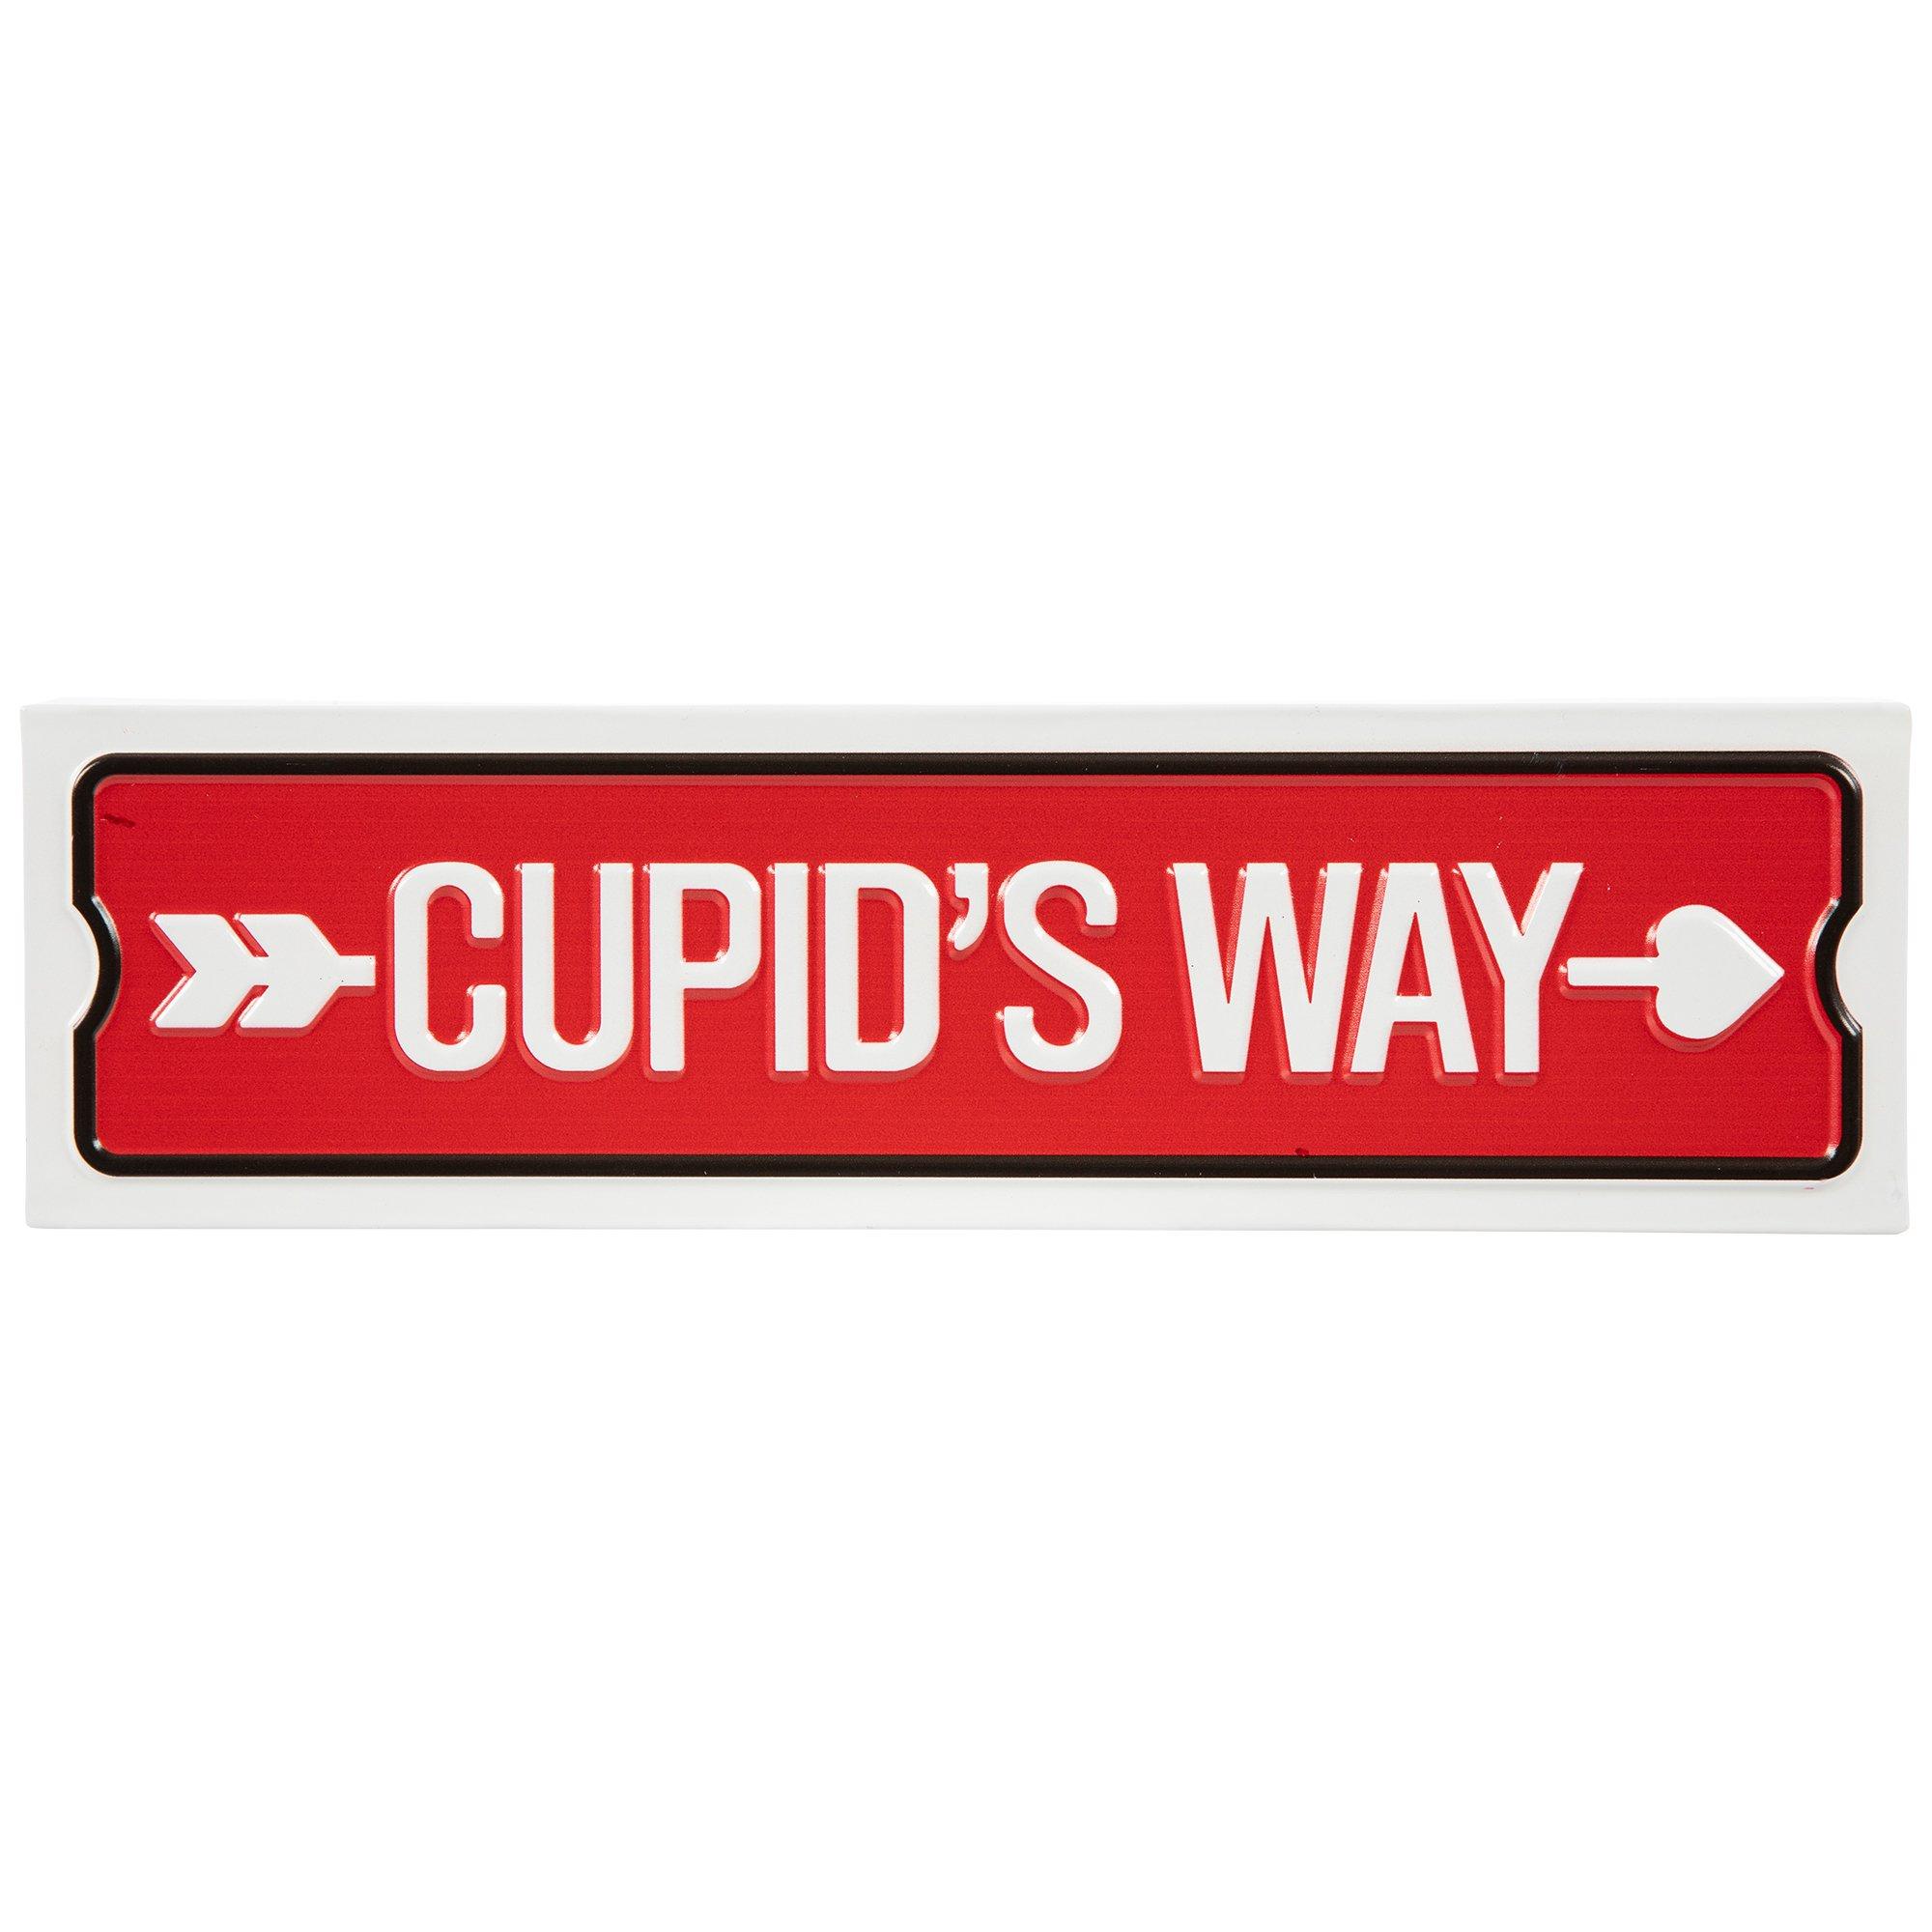 Cupid's way